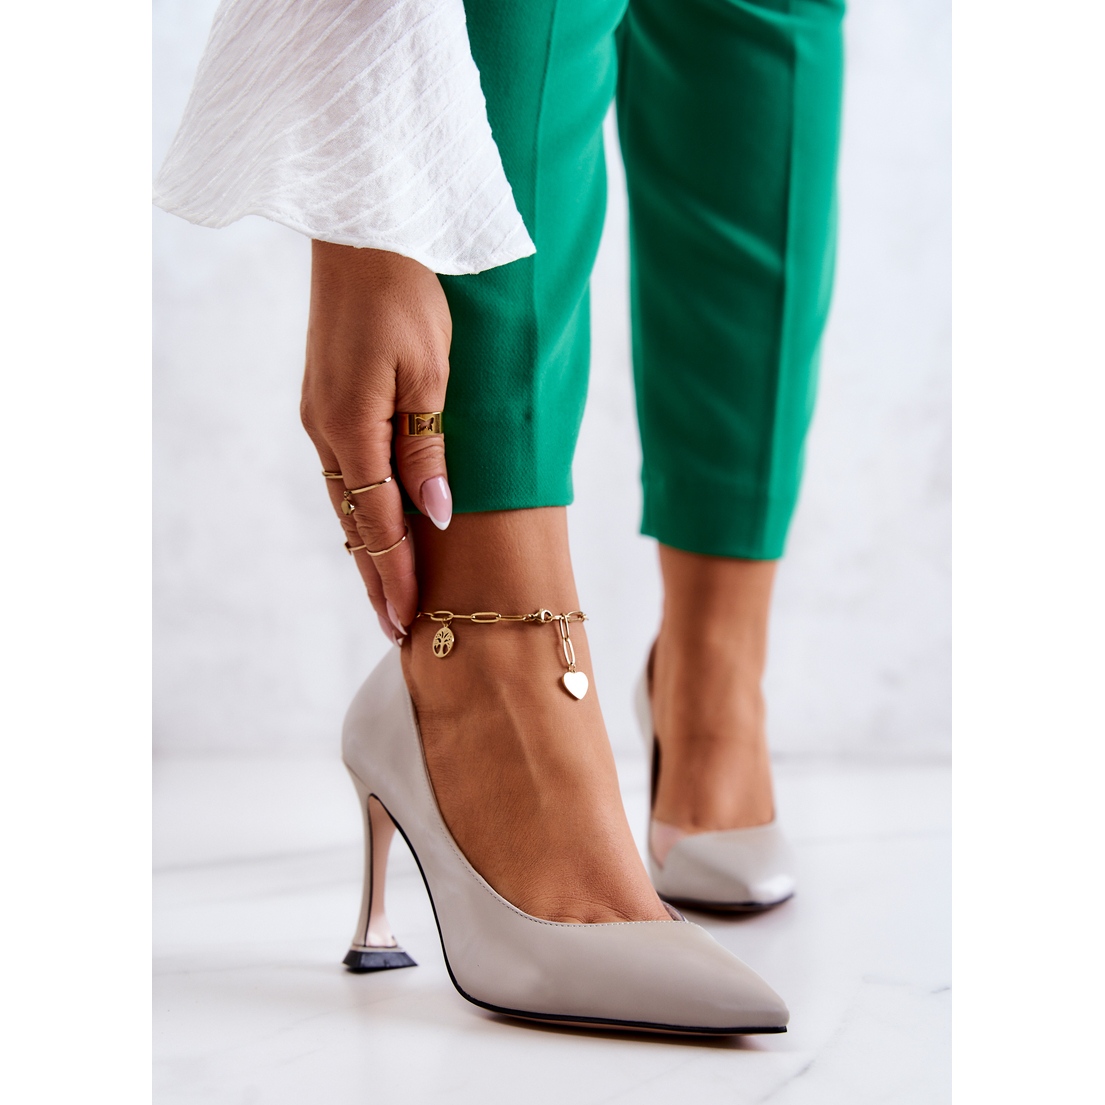 Light Grey Denim 4cm Heel Pumps Comfortable High Heels For Women | SHEIN